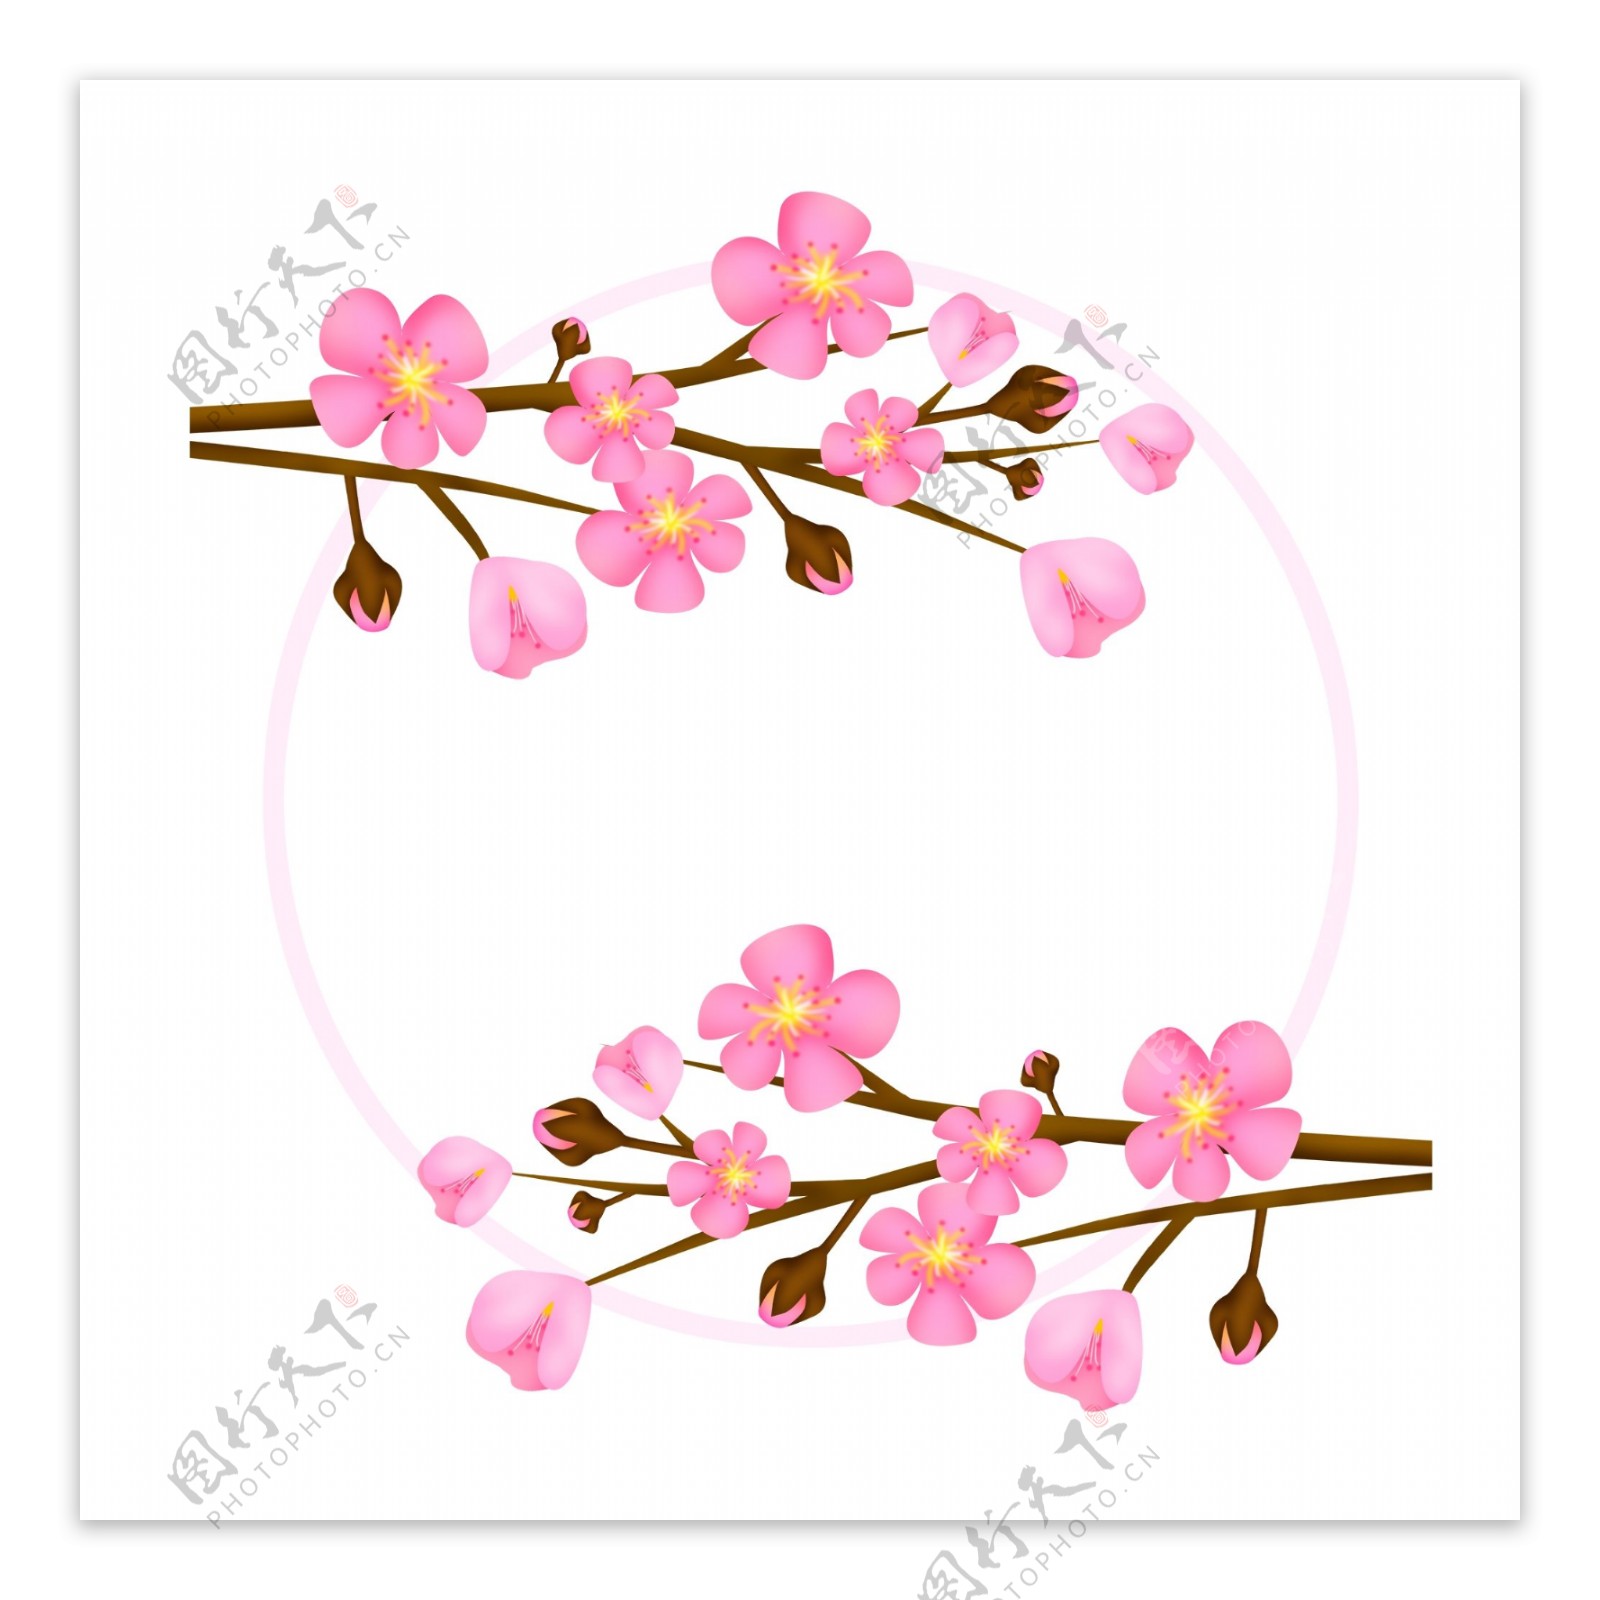 粉色唯美卡通樱花花朵圆环方形边框